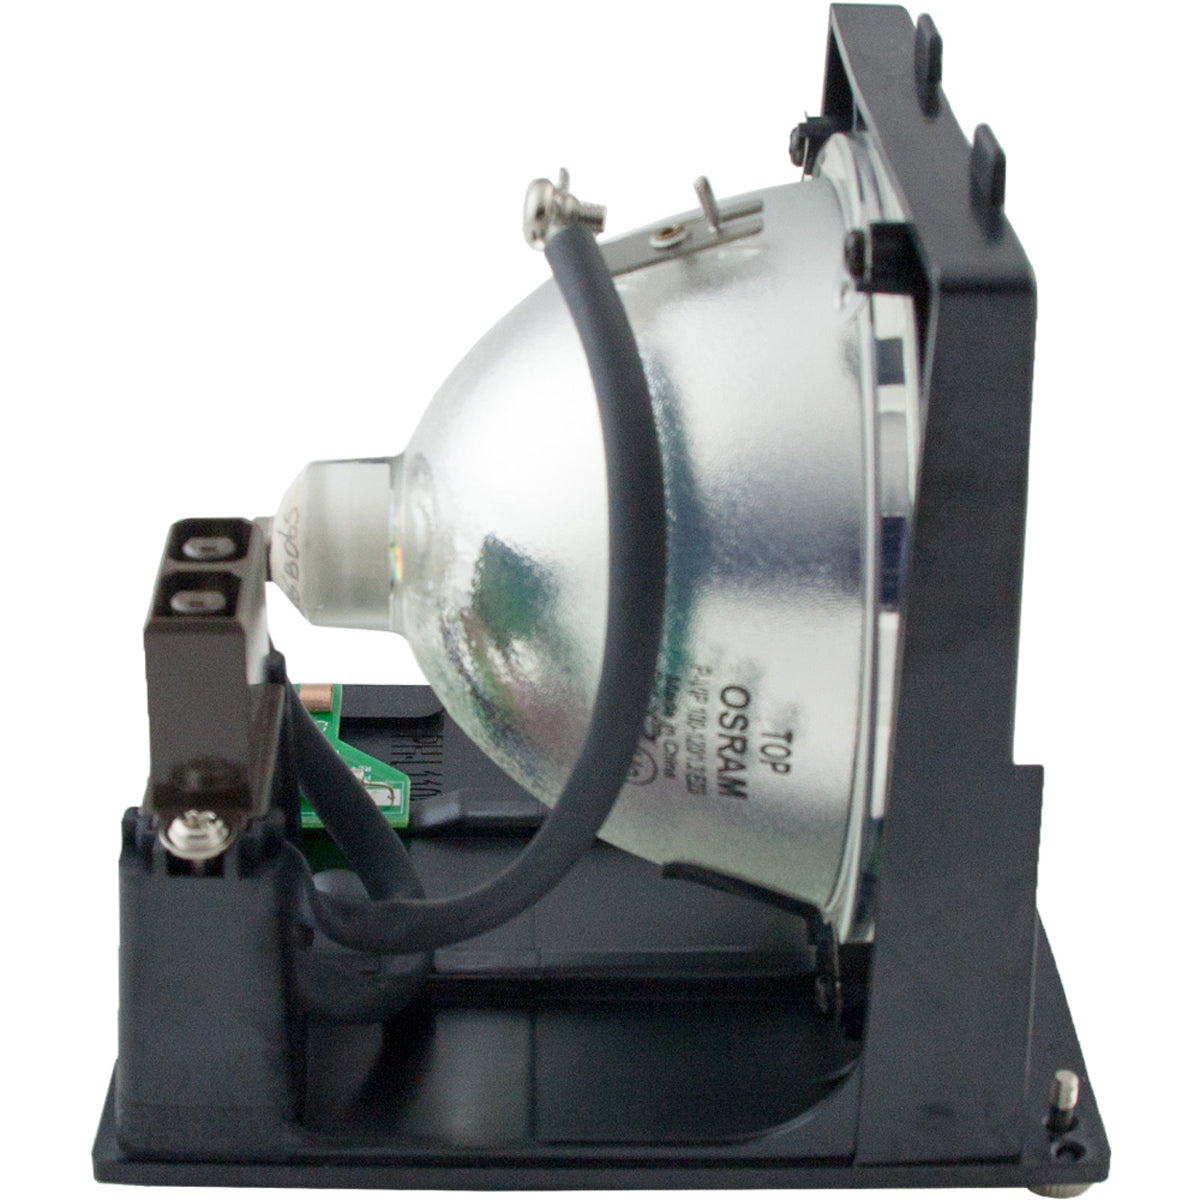 Optoma BL-VU120A TV Lamp Module